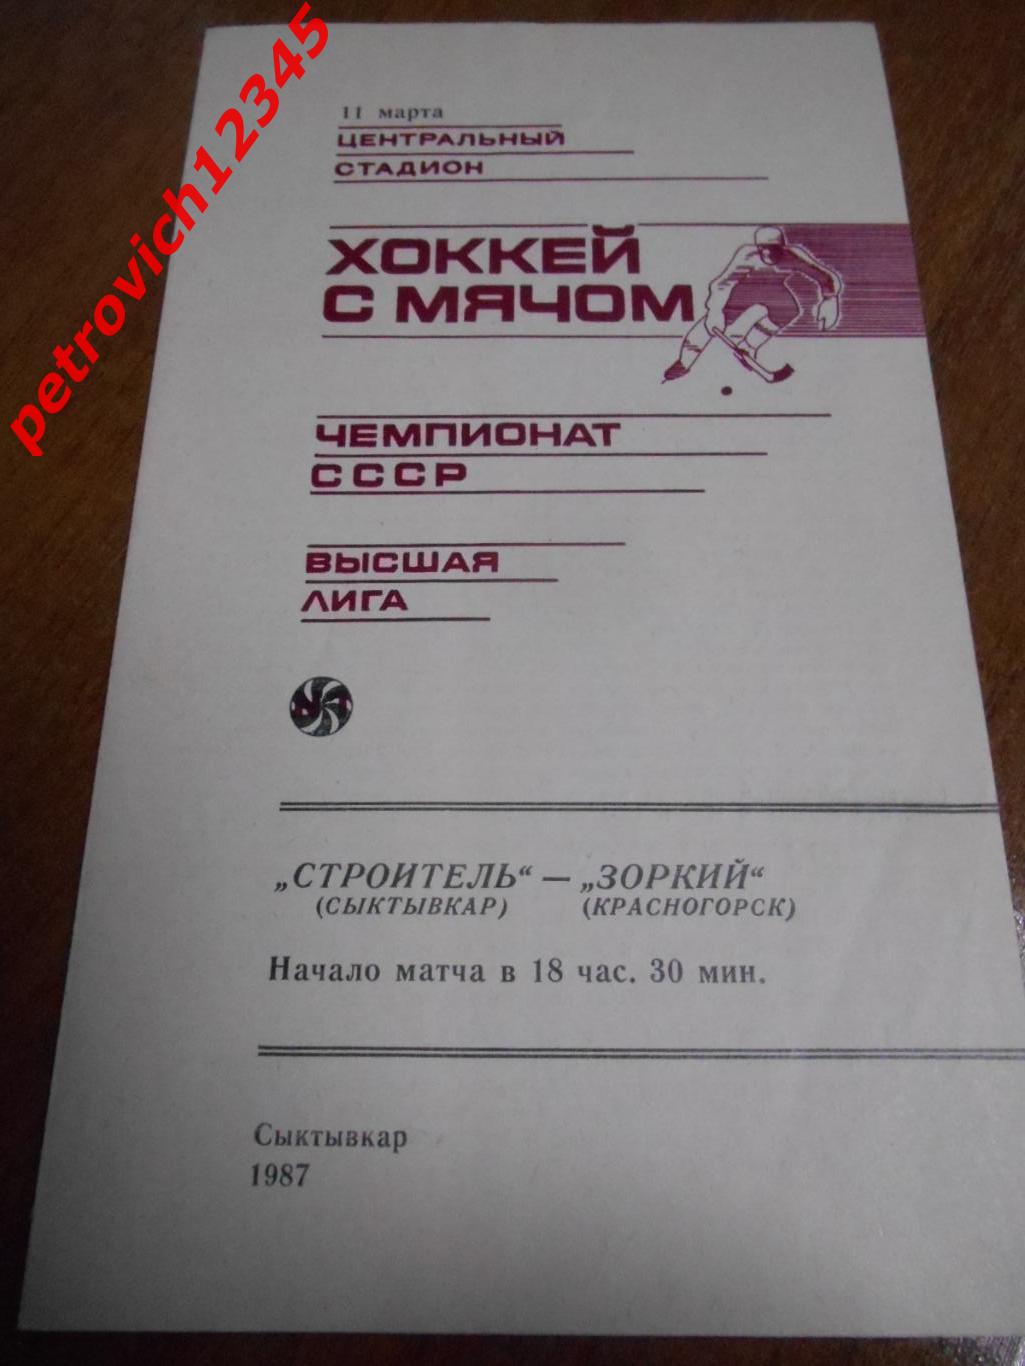 Строитель Сыктывкар - Зоркий Красногорск - 11 марта 1987г